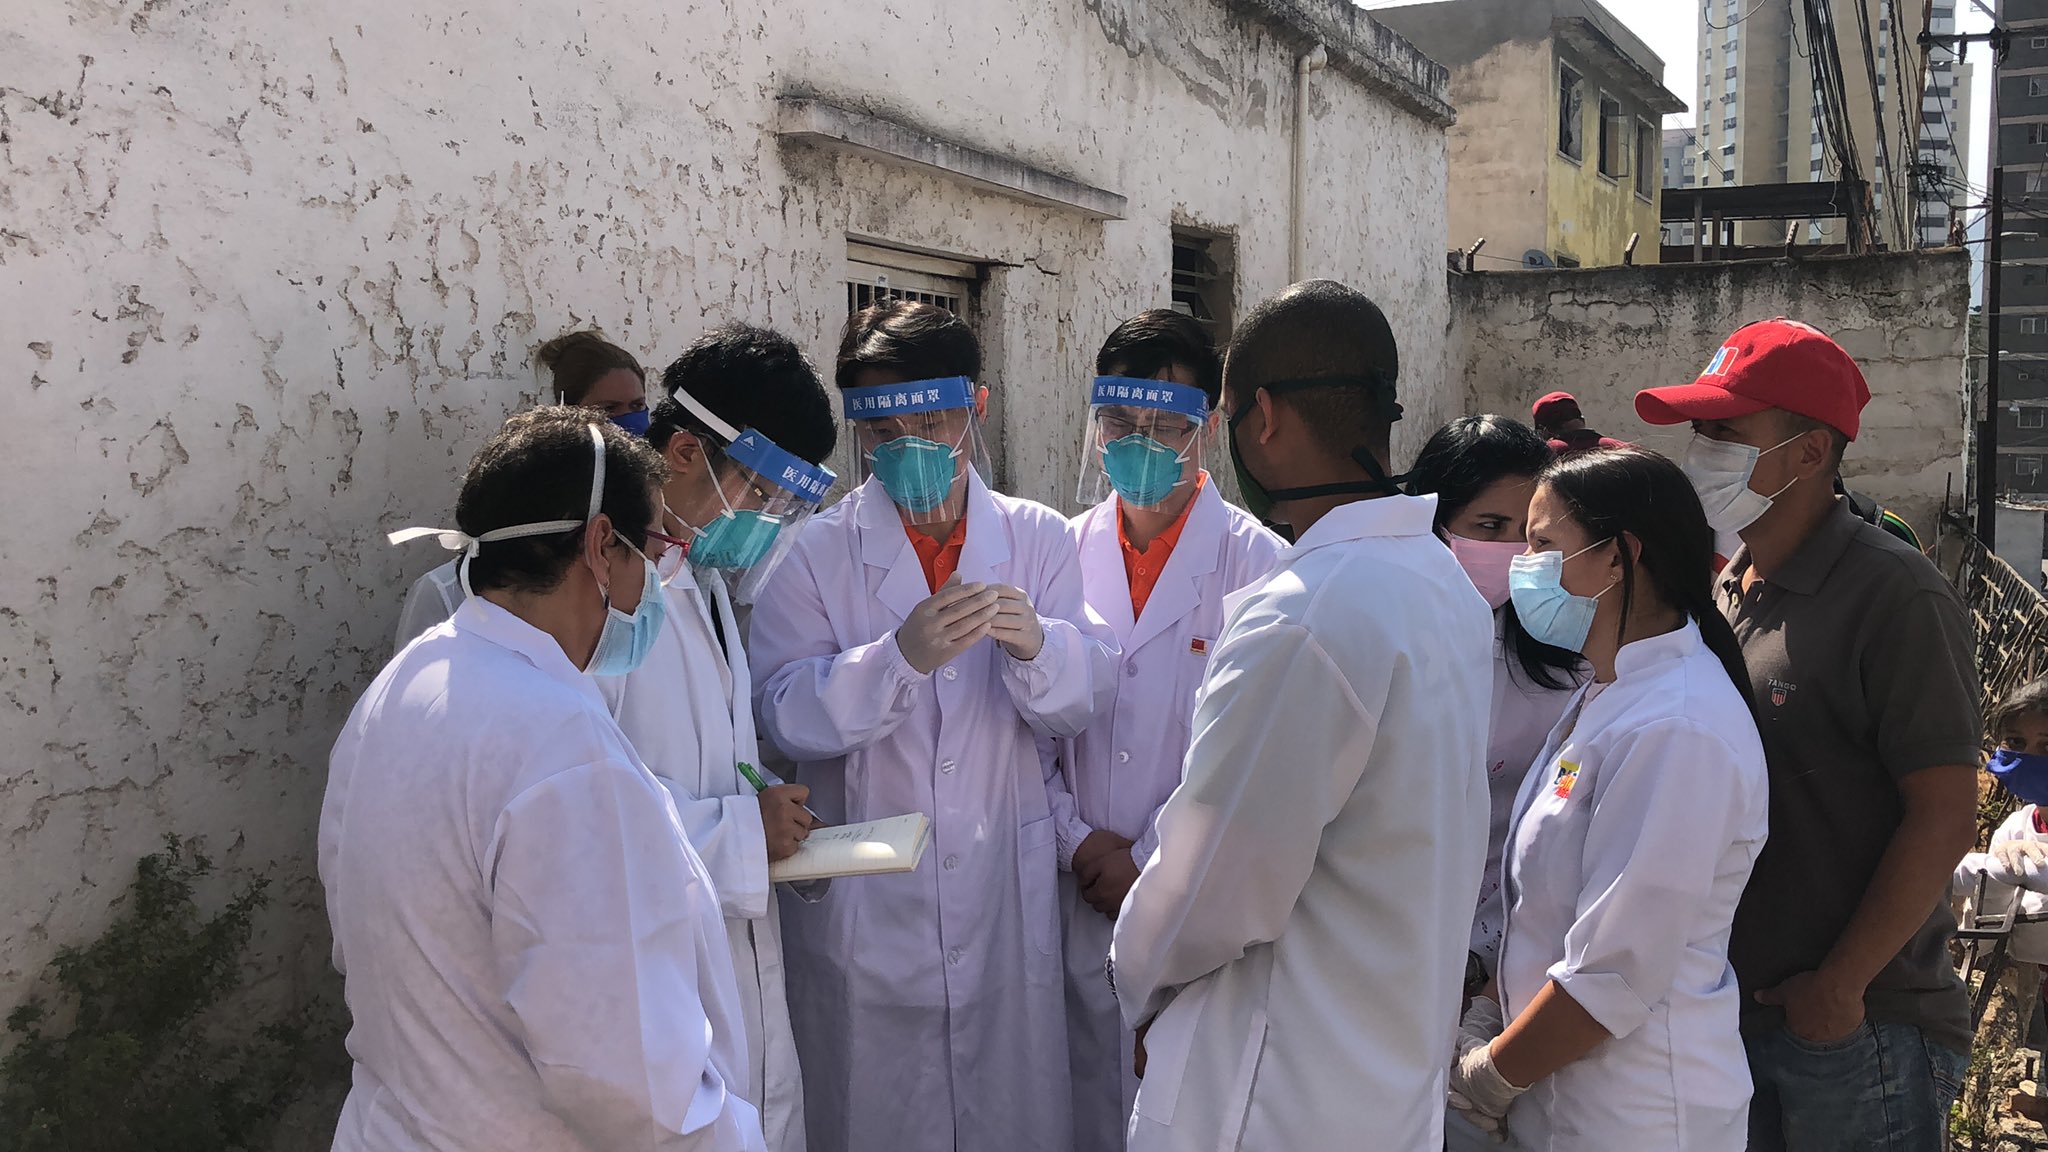 La delegación de médicos chinos visitó también las instalaciones del Centro de Diagnóstico Integral (CDI) Dr. Alcides Rodríguez que forma parte de la Red Comunal para la atención de casos de Covid-19 en la región capital.